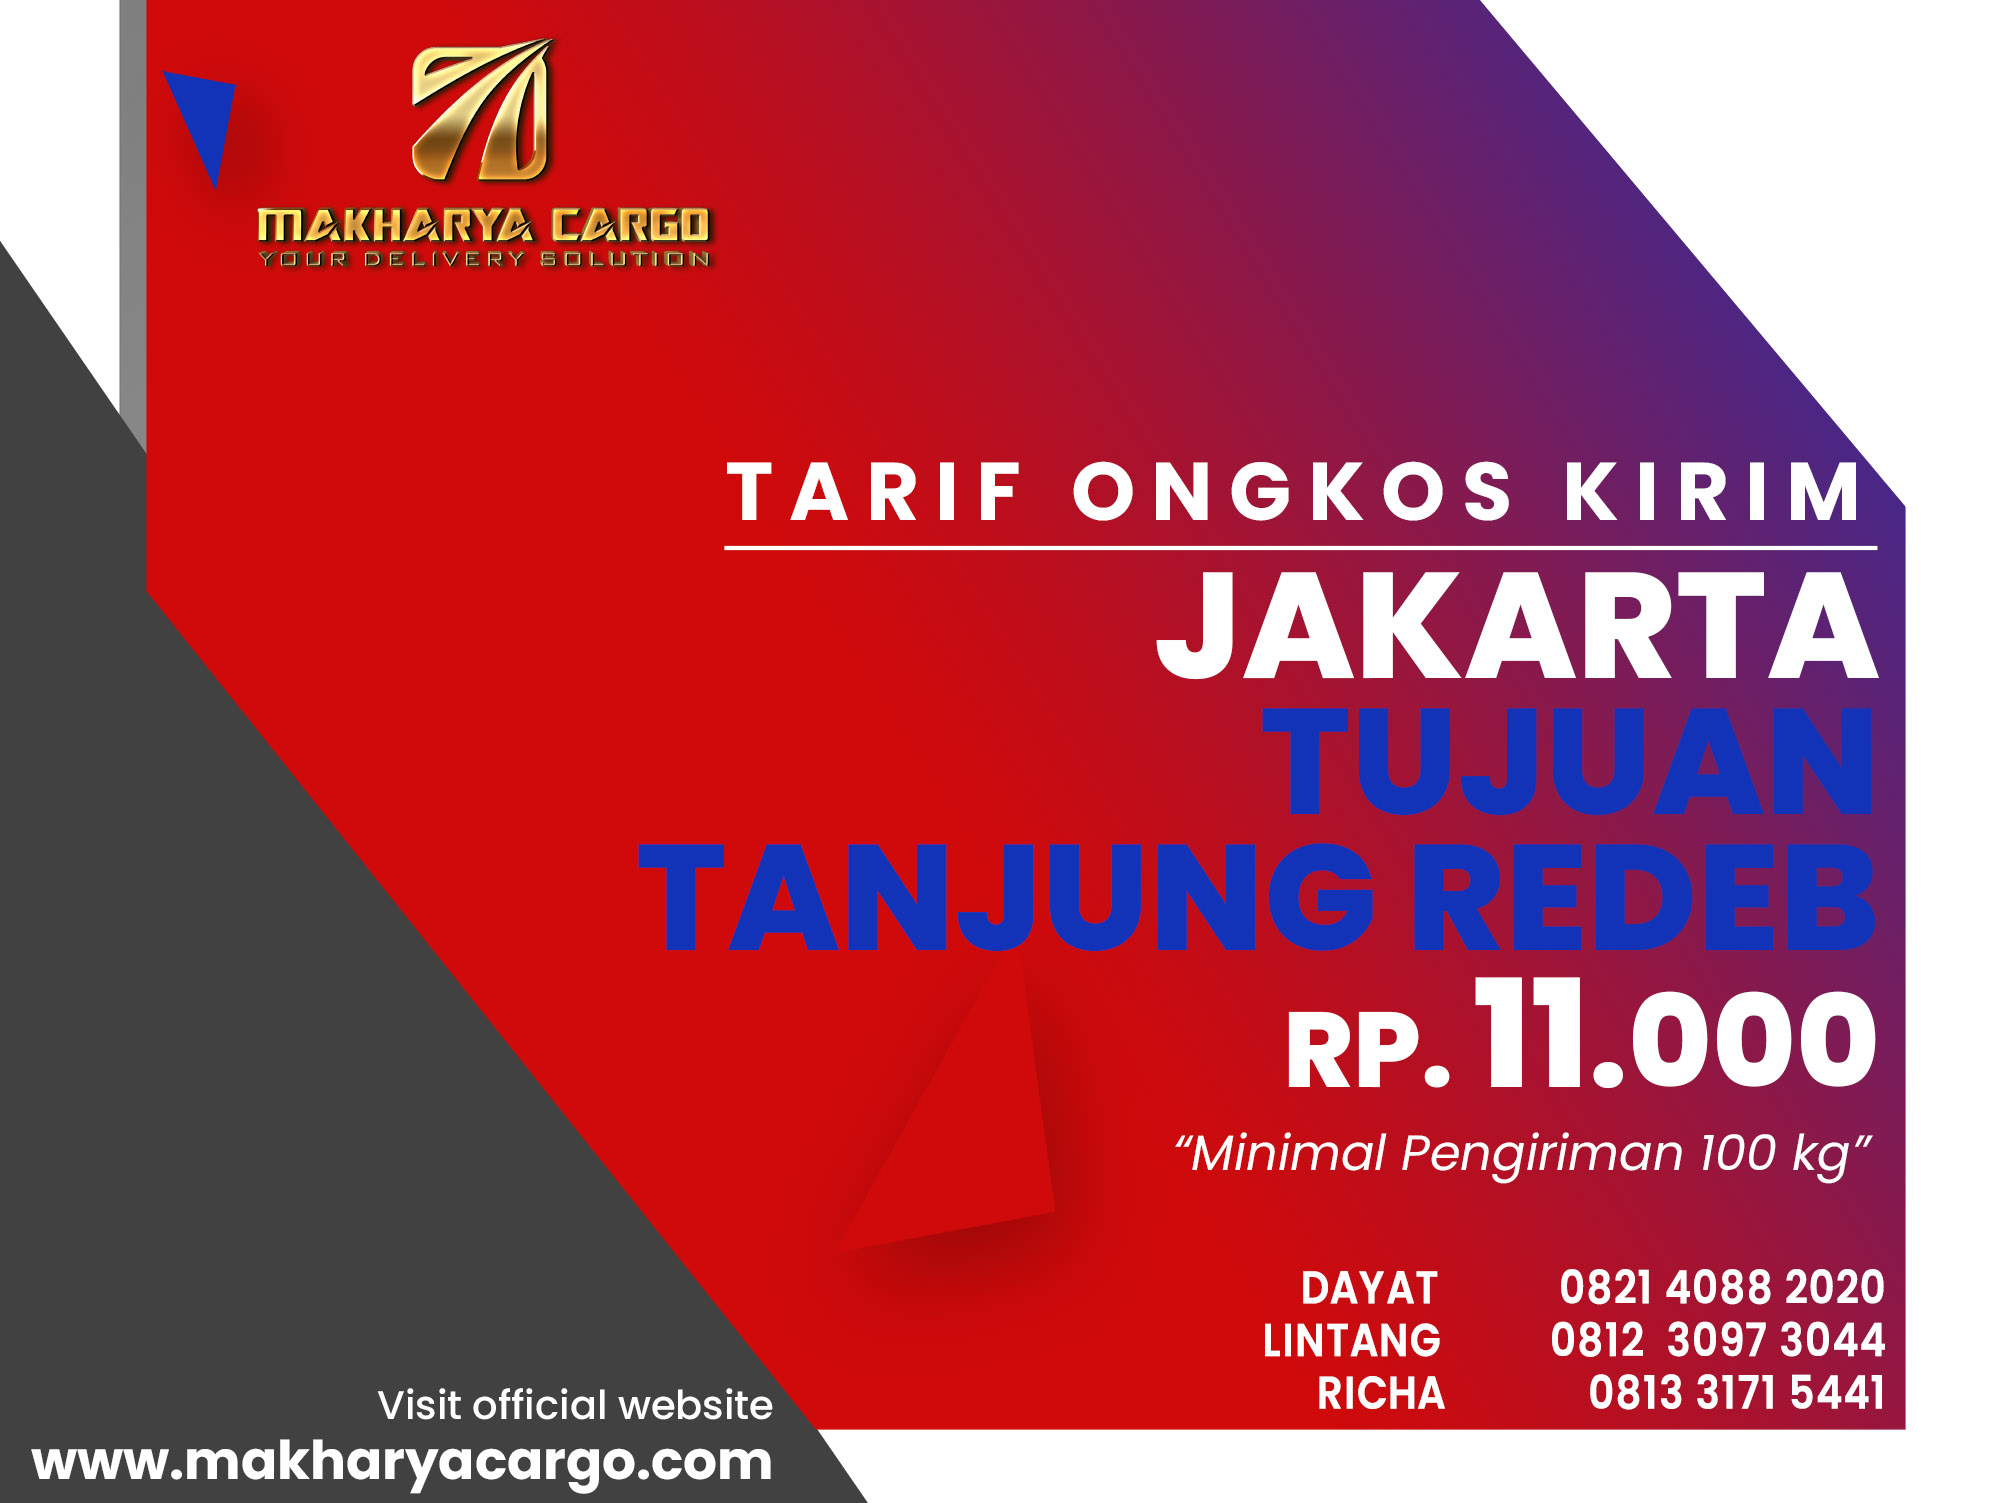 Tarif Ongkos Kirim Jakarta Tanjung Redeb